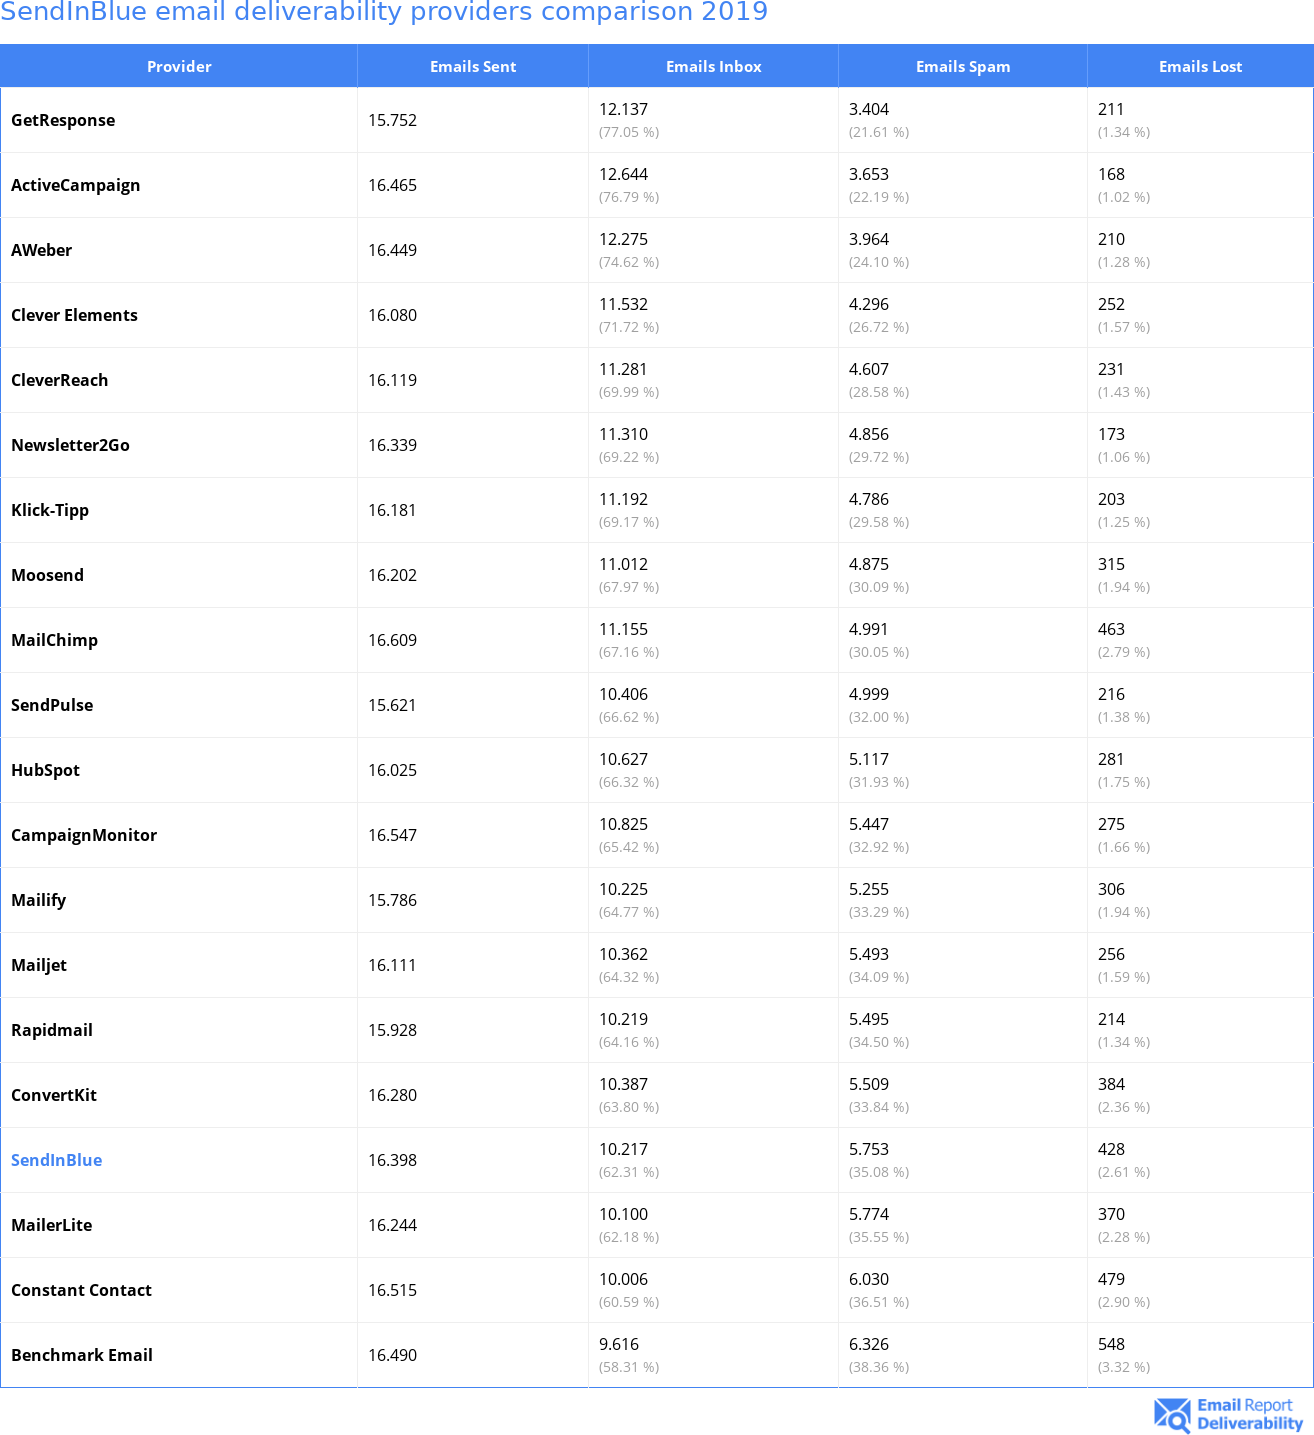 SendInBlue email deliverability providers comparison 2019